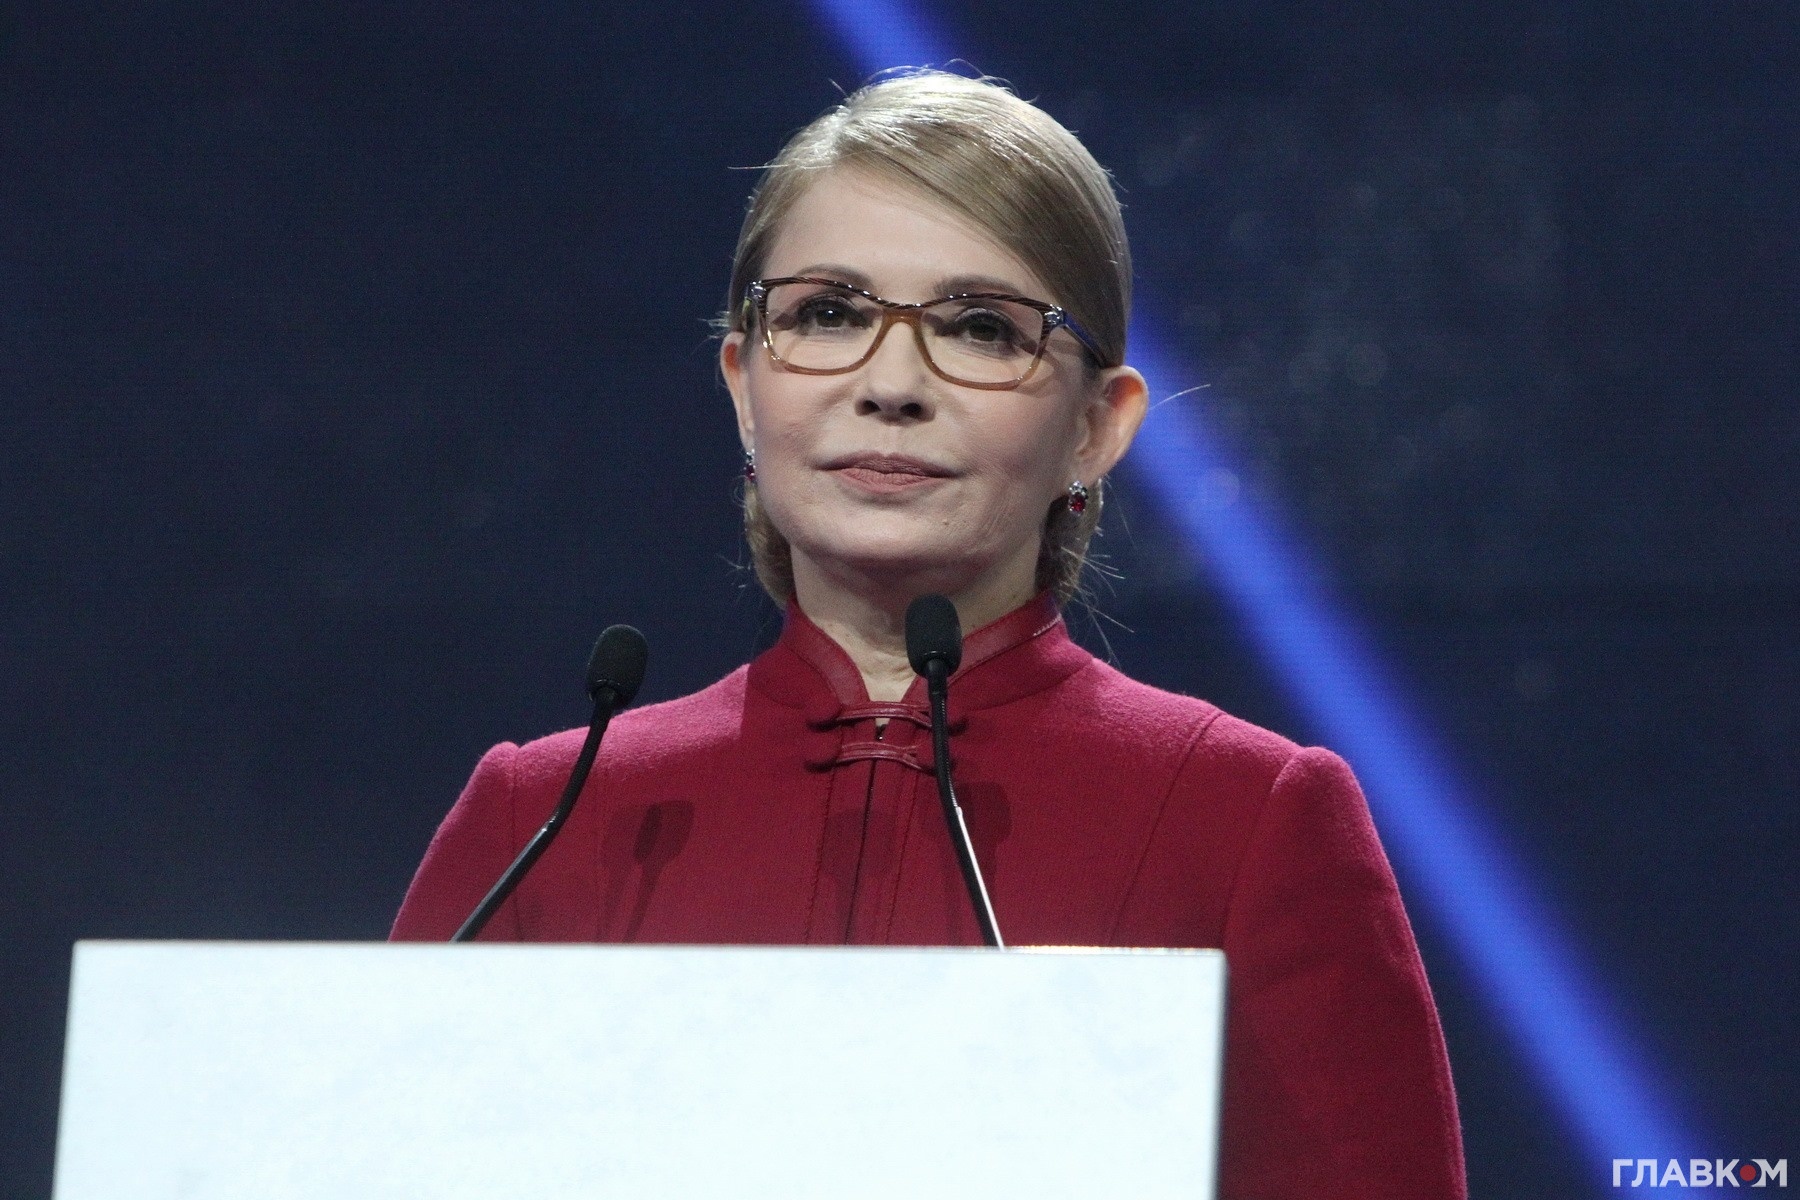 Дійство тривало більше чотирьох годин, з яких наприкінці більше години безперервно говорила сама Тимошенко